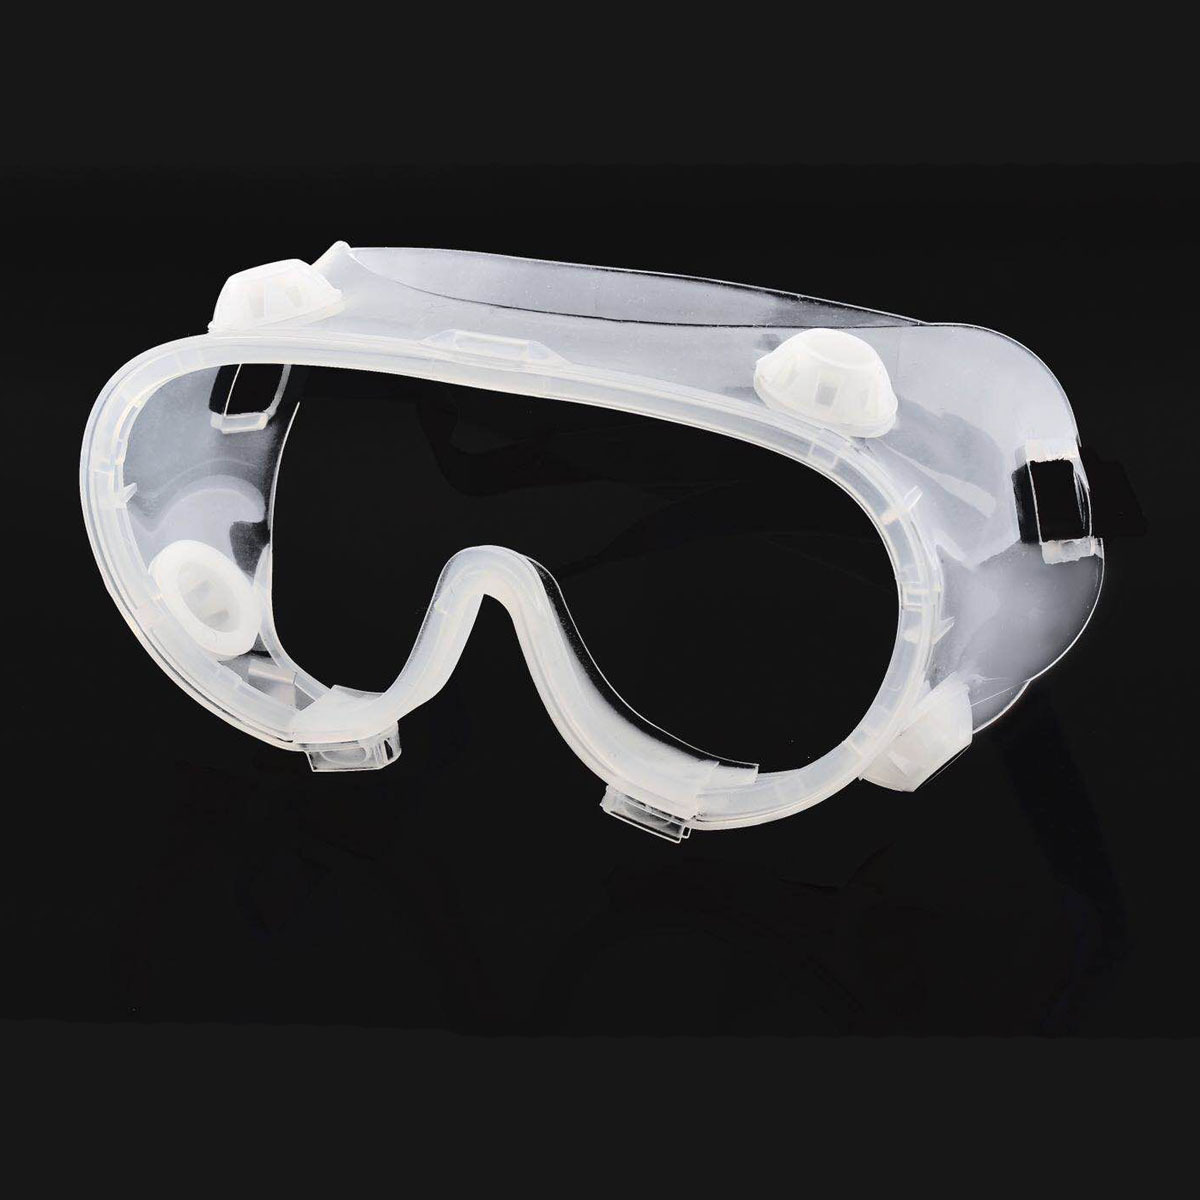 Transparente Schutzbrille Schutzbrille Spritzschutz Winddichte Arbeitssicherheitsbrille für die industrielle Forschung Radfahren